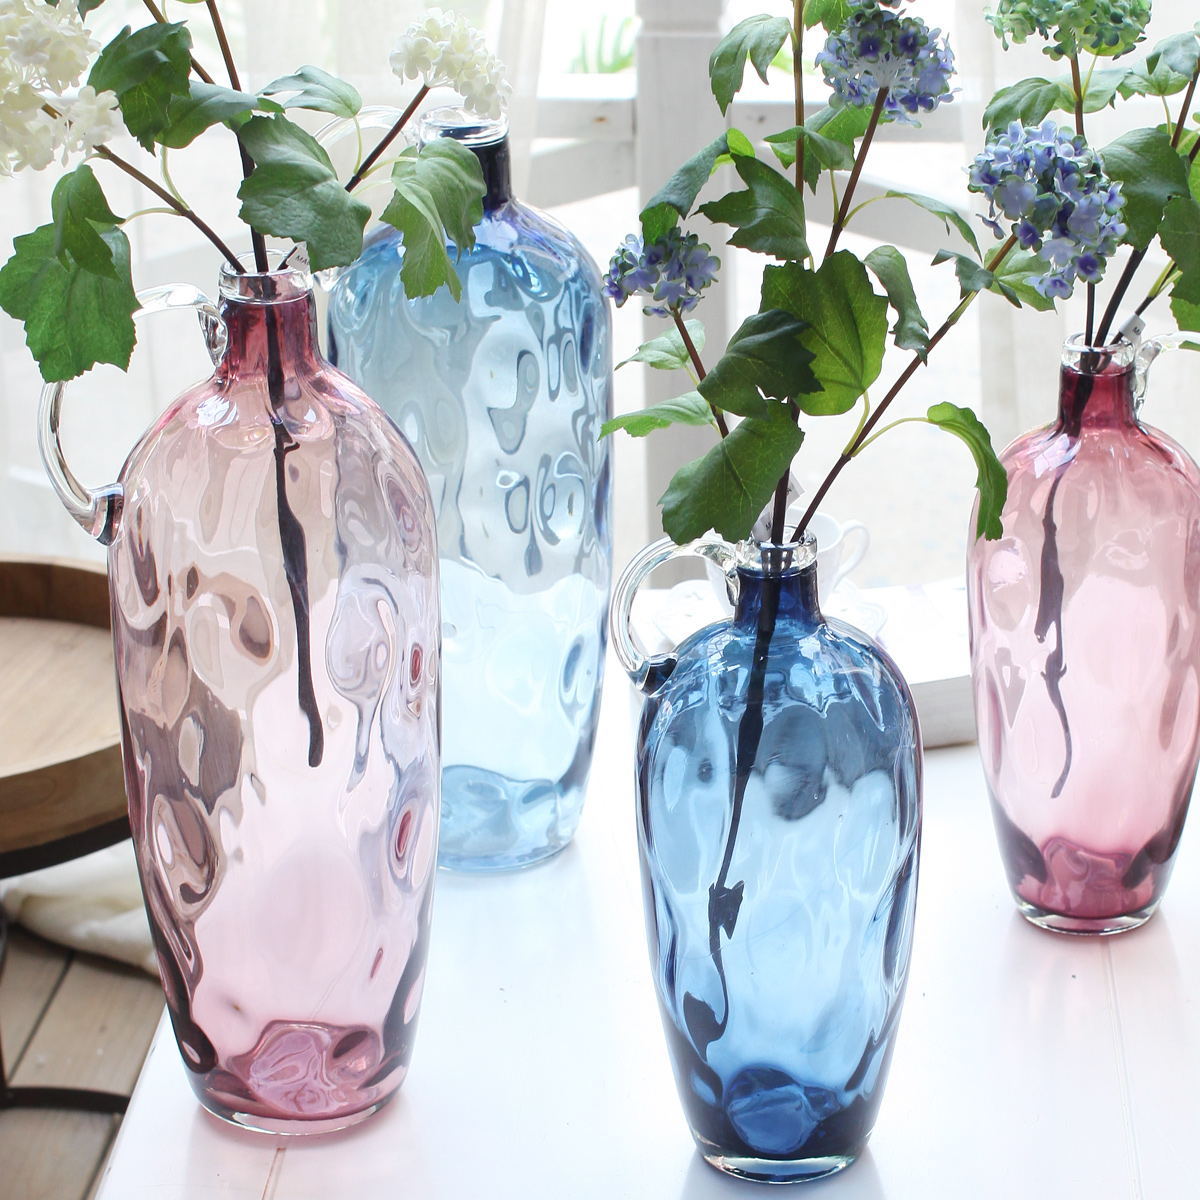 西西里家居 彩色玻璃花瓶 人工吹制玻璃器皿现代简约家居客厅摆件